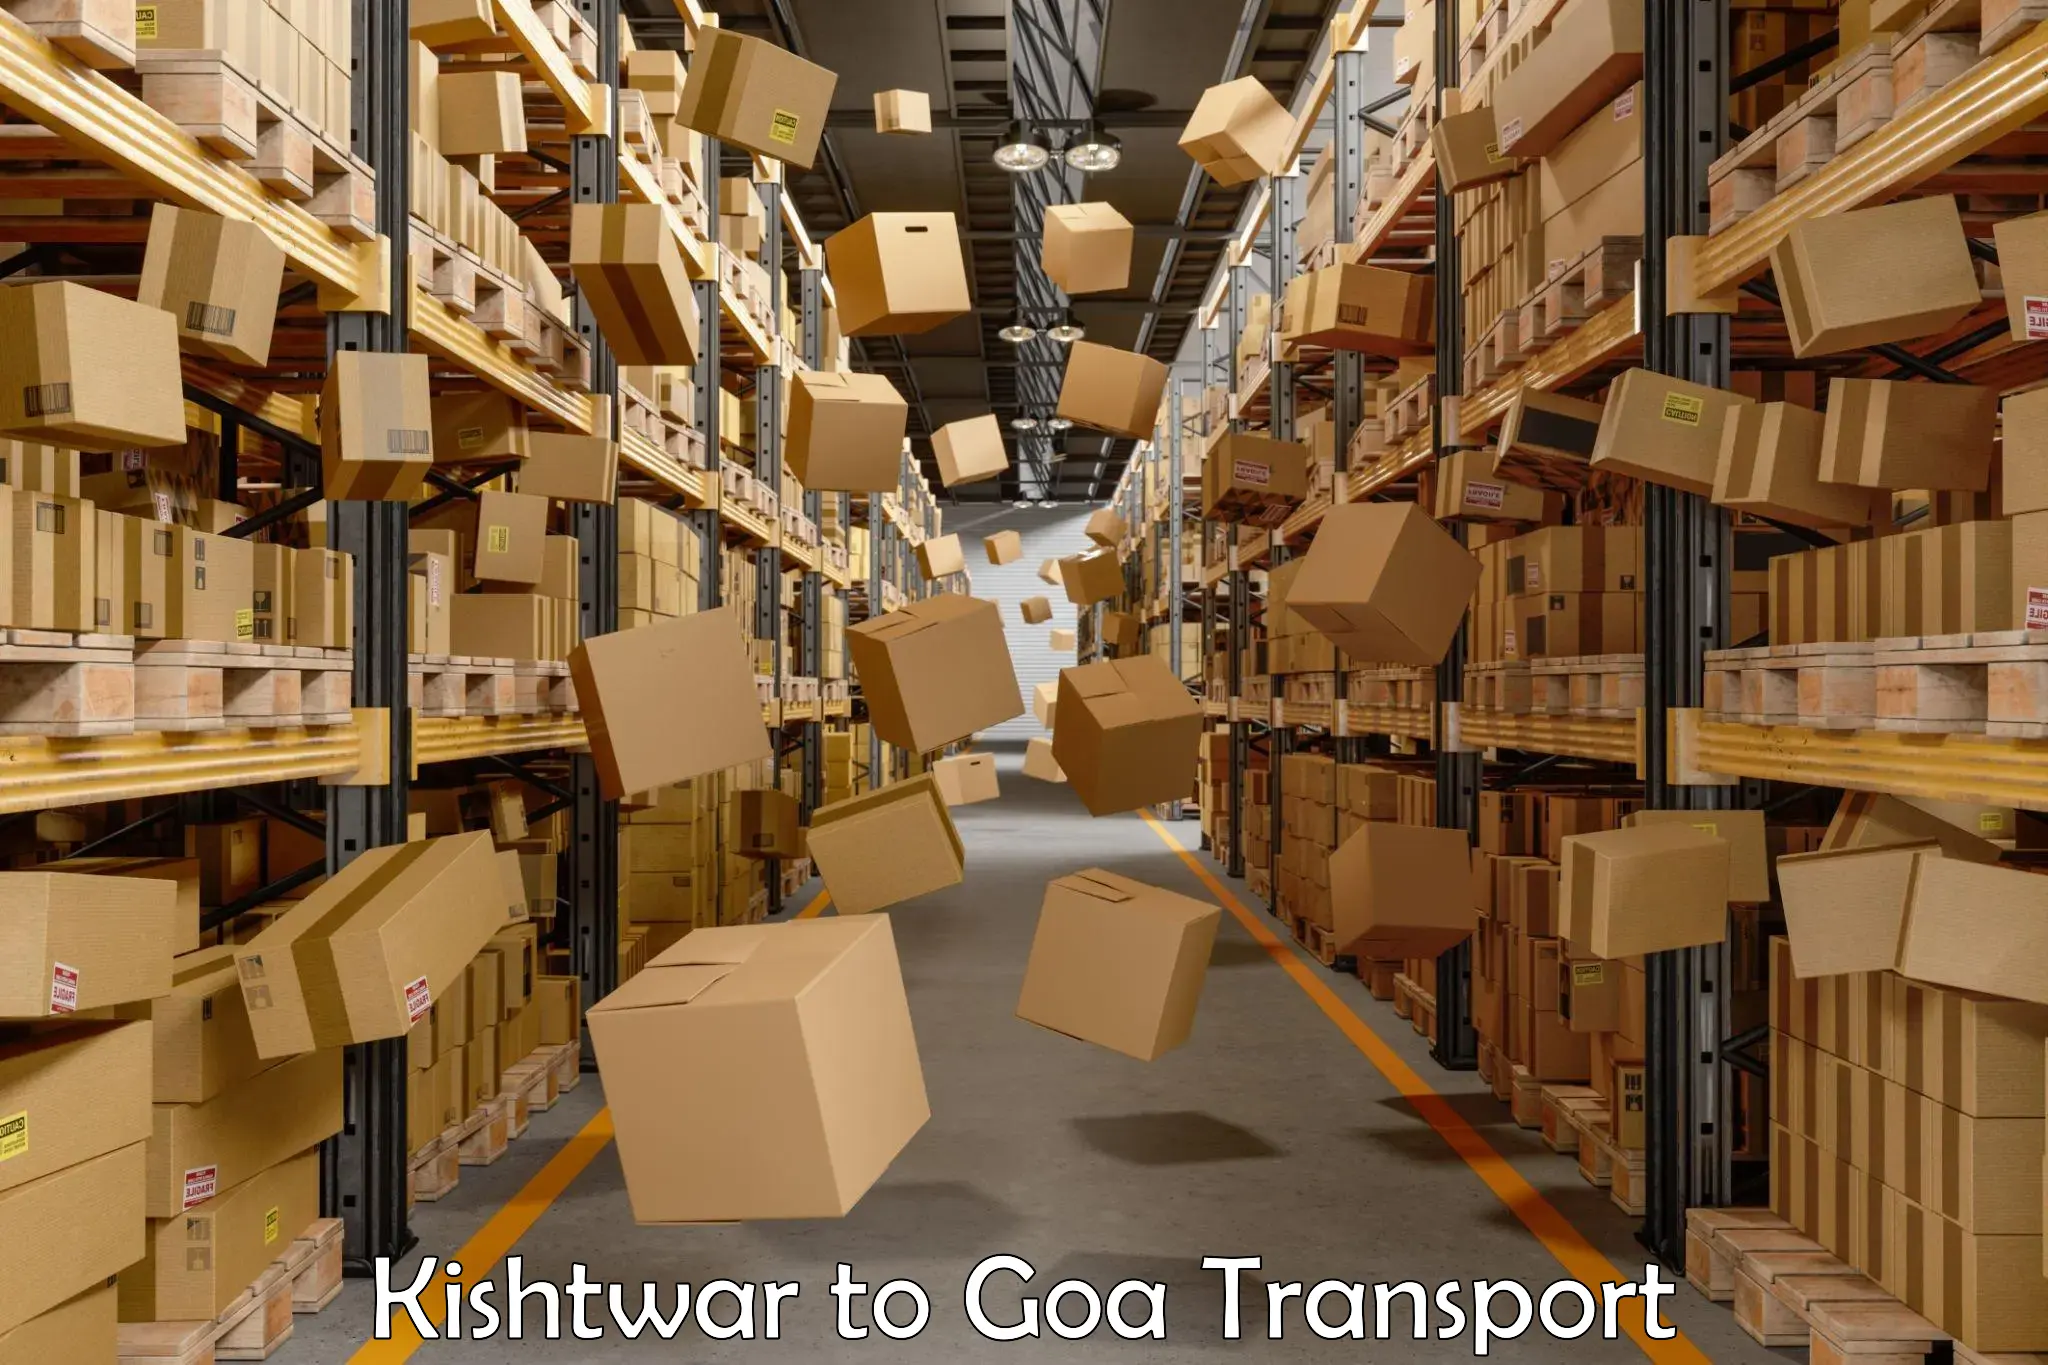 Commercial transport service Kishtwar to Sanvordem